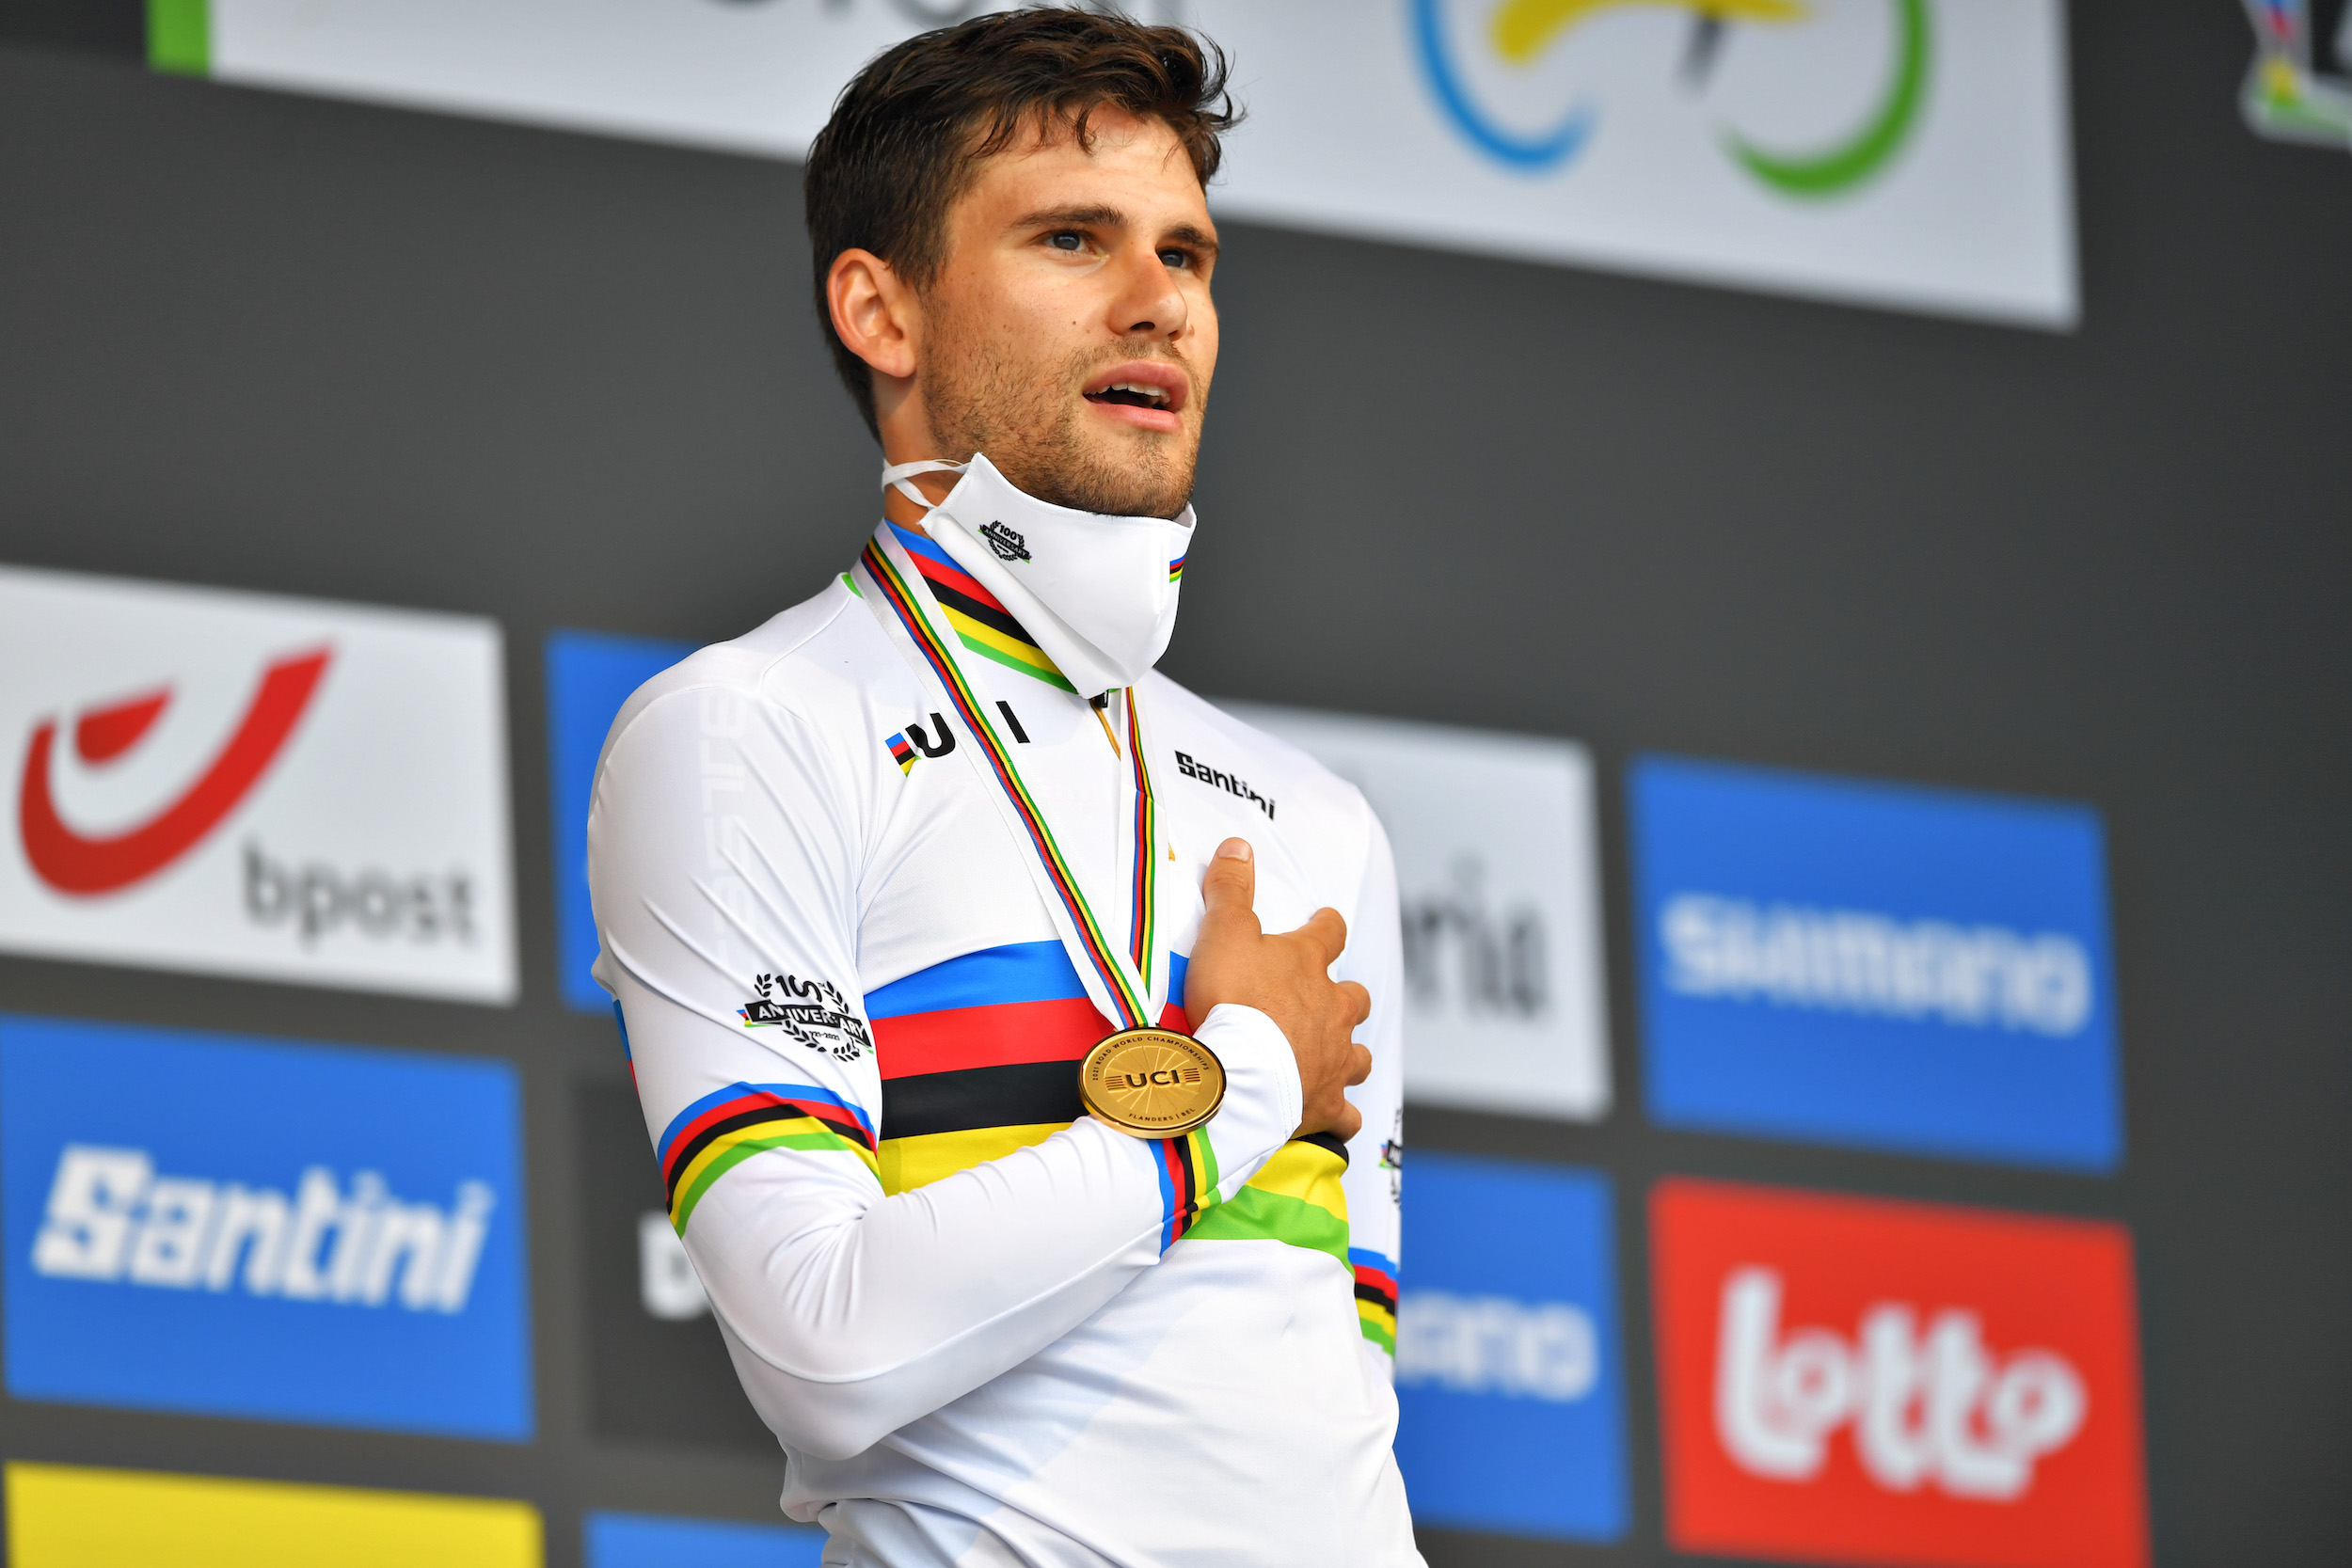 Filippo Ganna tendrá oportunidades en Milán-San Remo y Paris-Roubaix este año